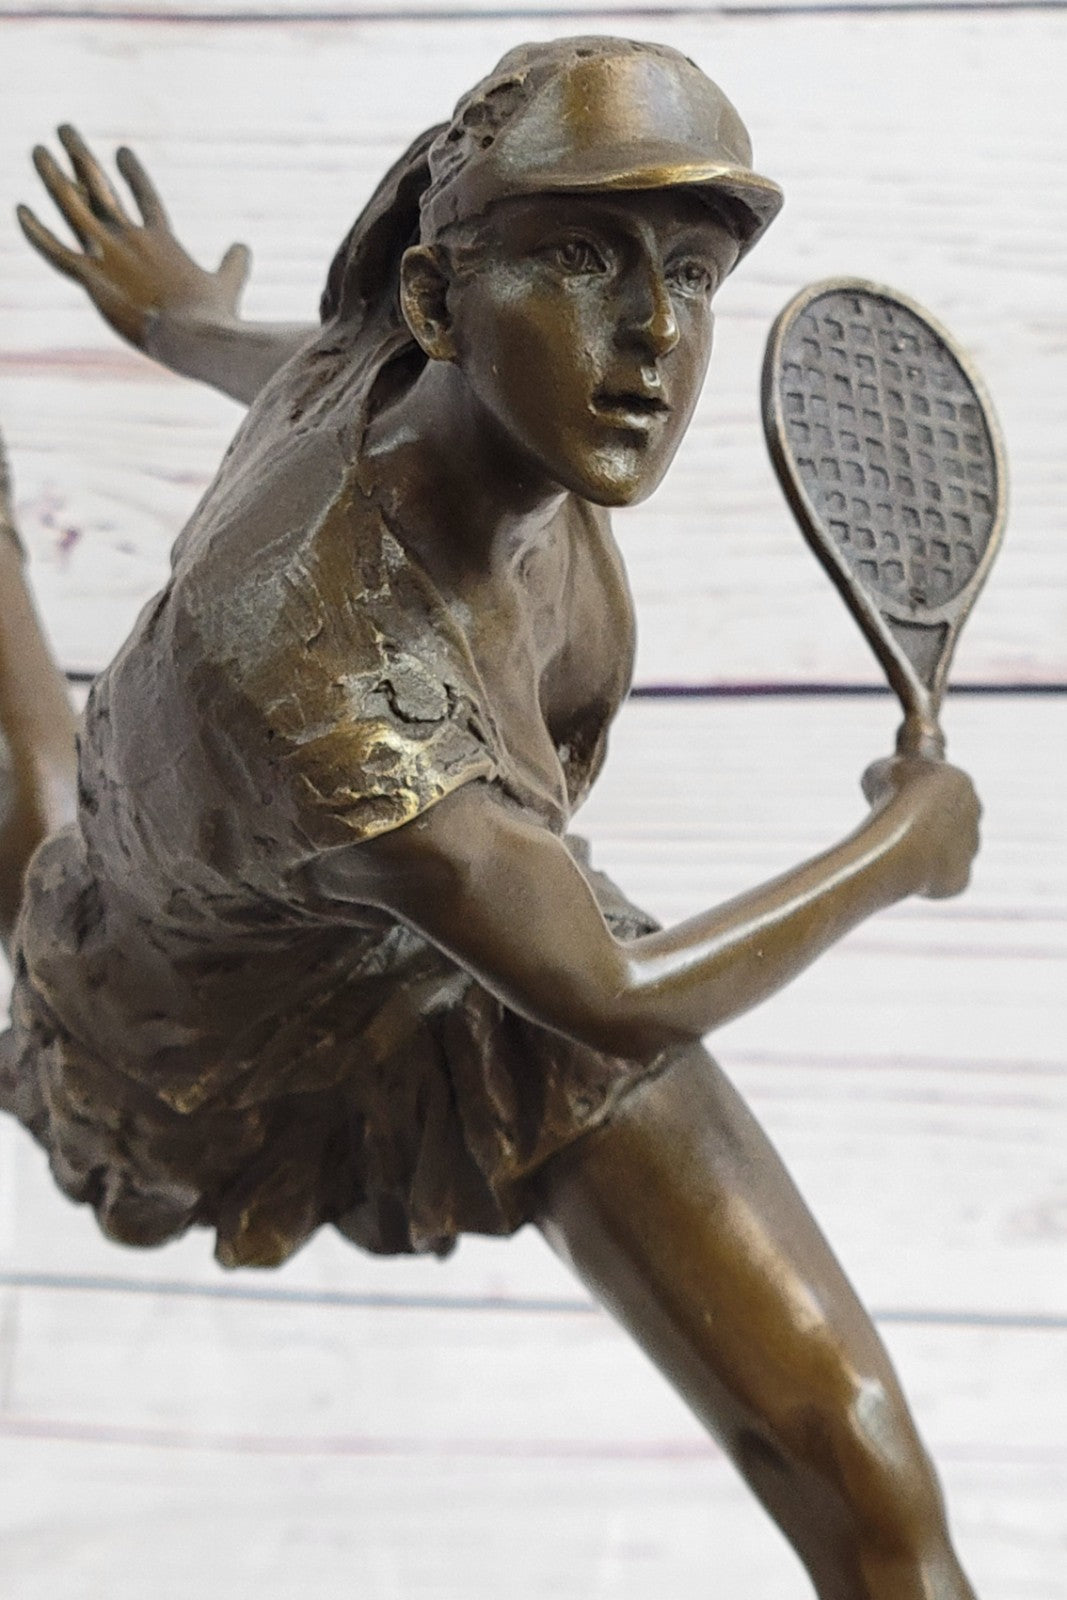 Bronze Trophy Sport Memorabilia Collectible Girl Tennis Player Bronze Sculpture